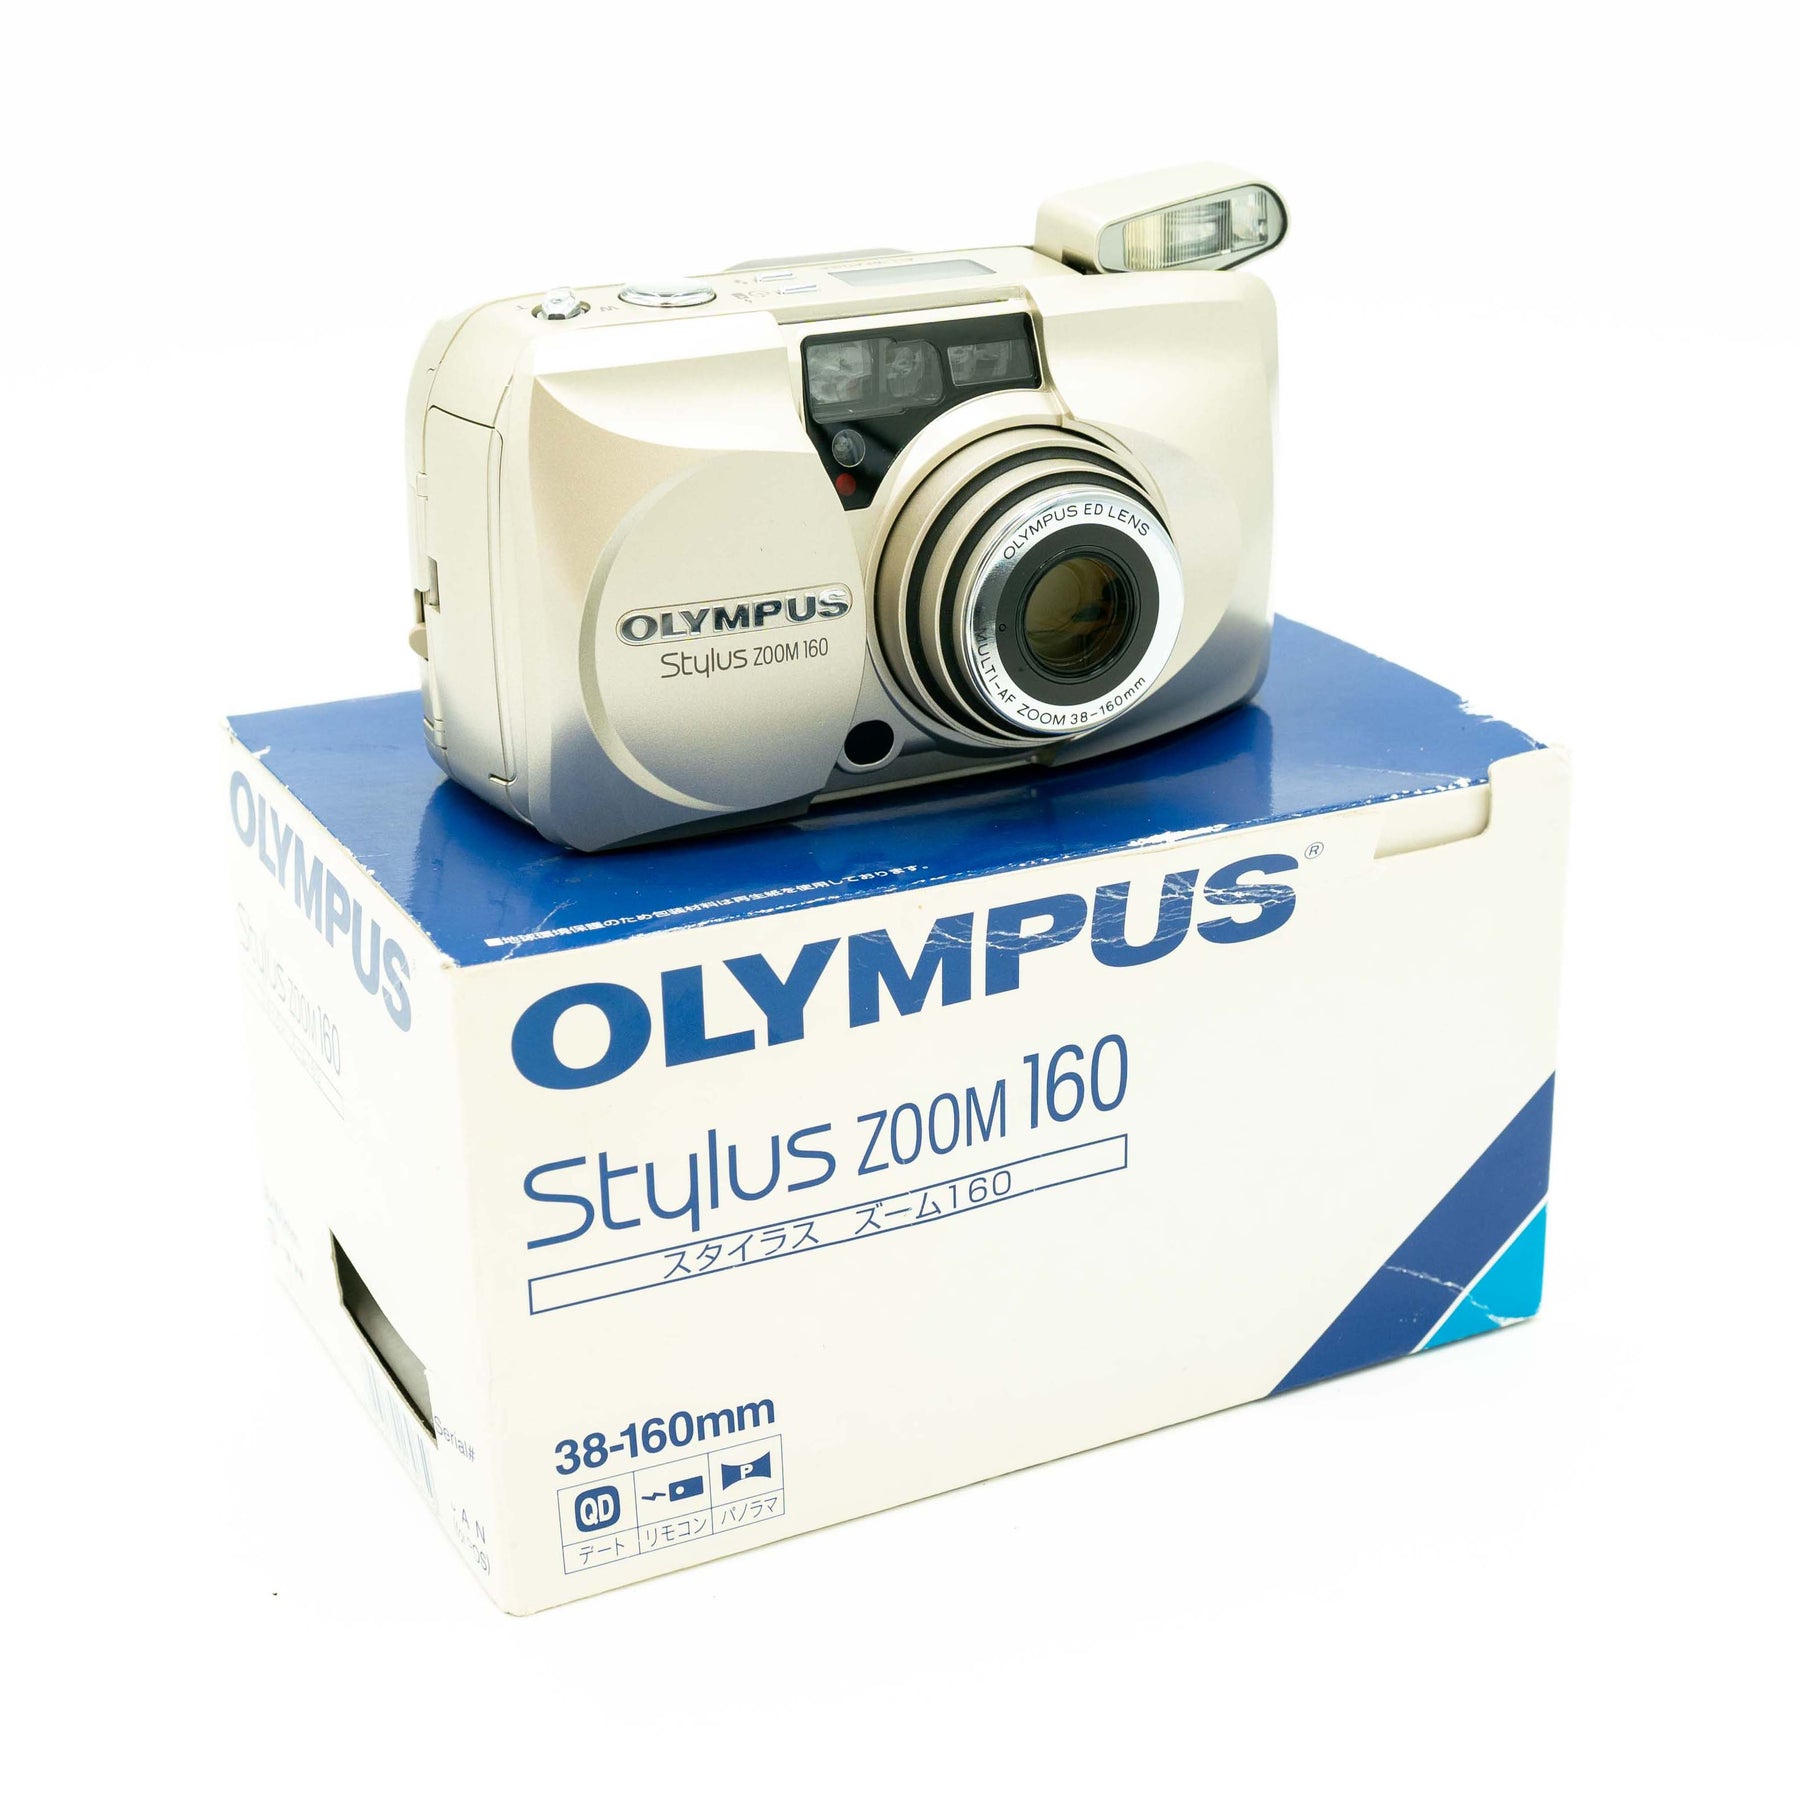 OLYMPUS μ stylus zoom 160 【超歓迎された】 - フィルムカメラ